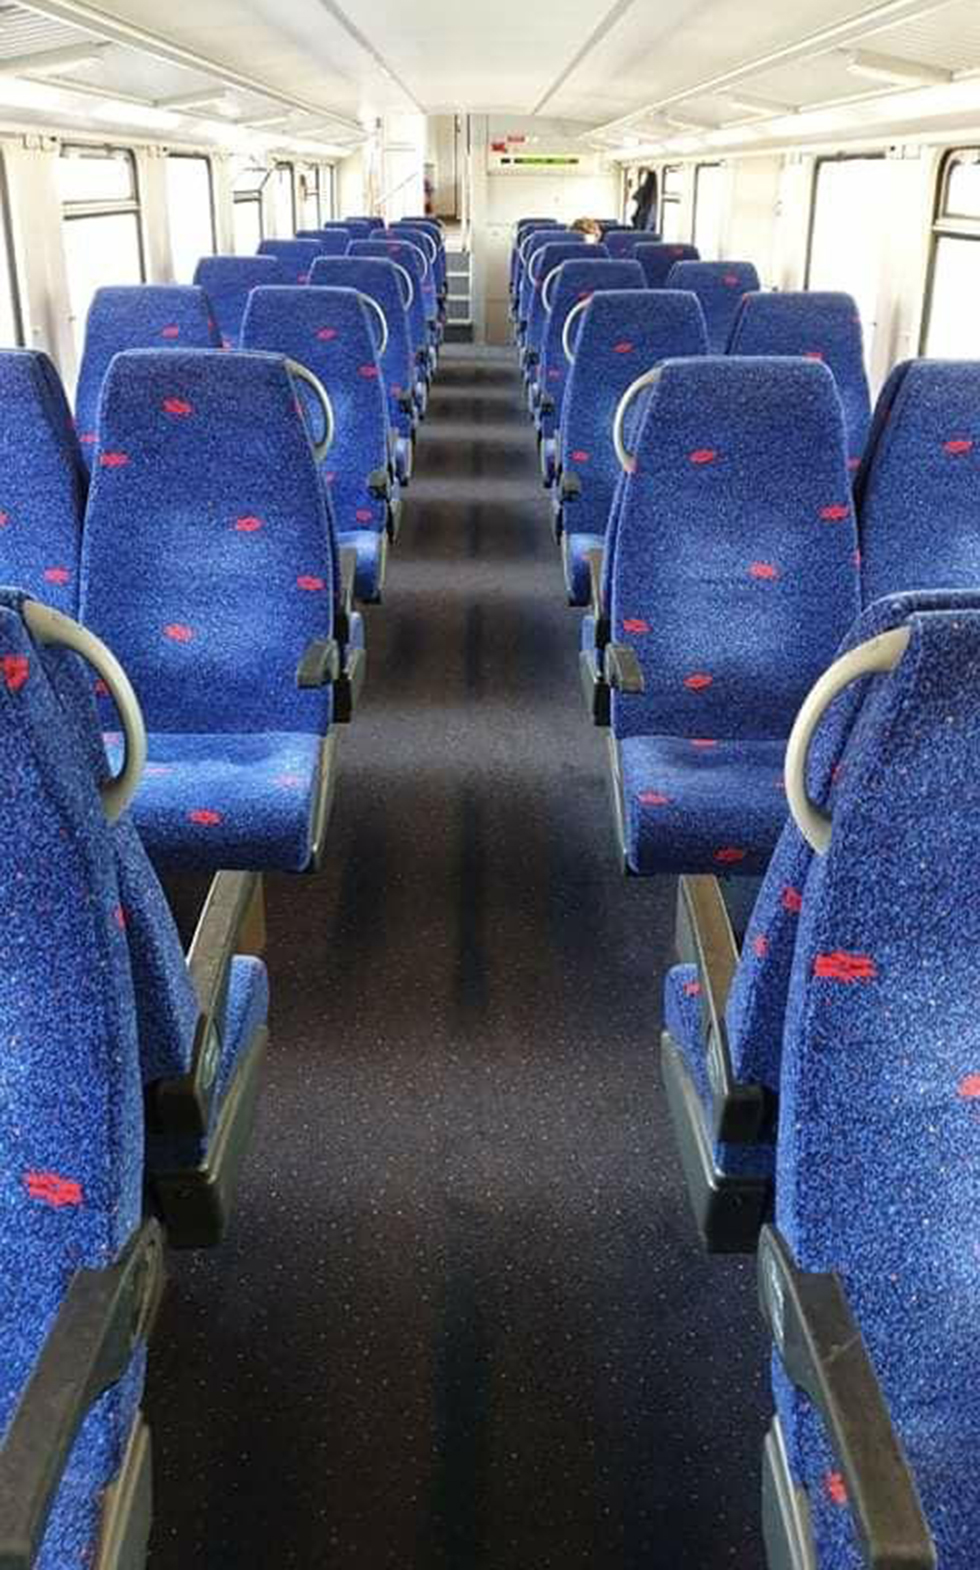 קרון ריק ברכבת בנימינה תל אביב (מתוך עמוד הפייסבוק בארכבת)